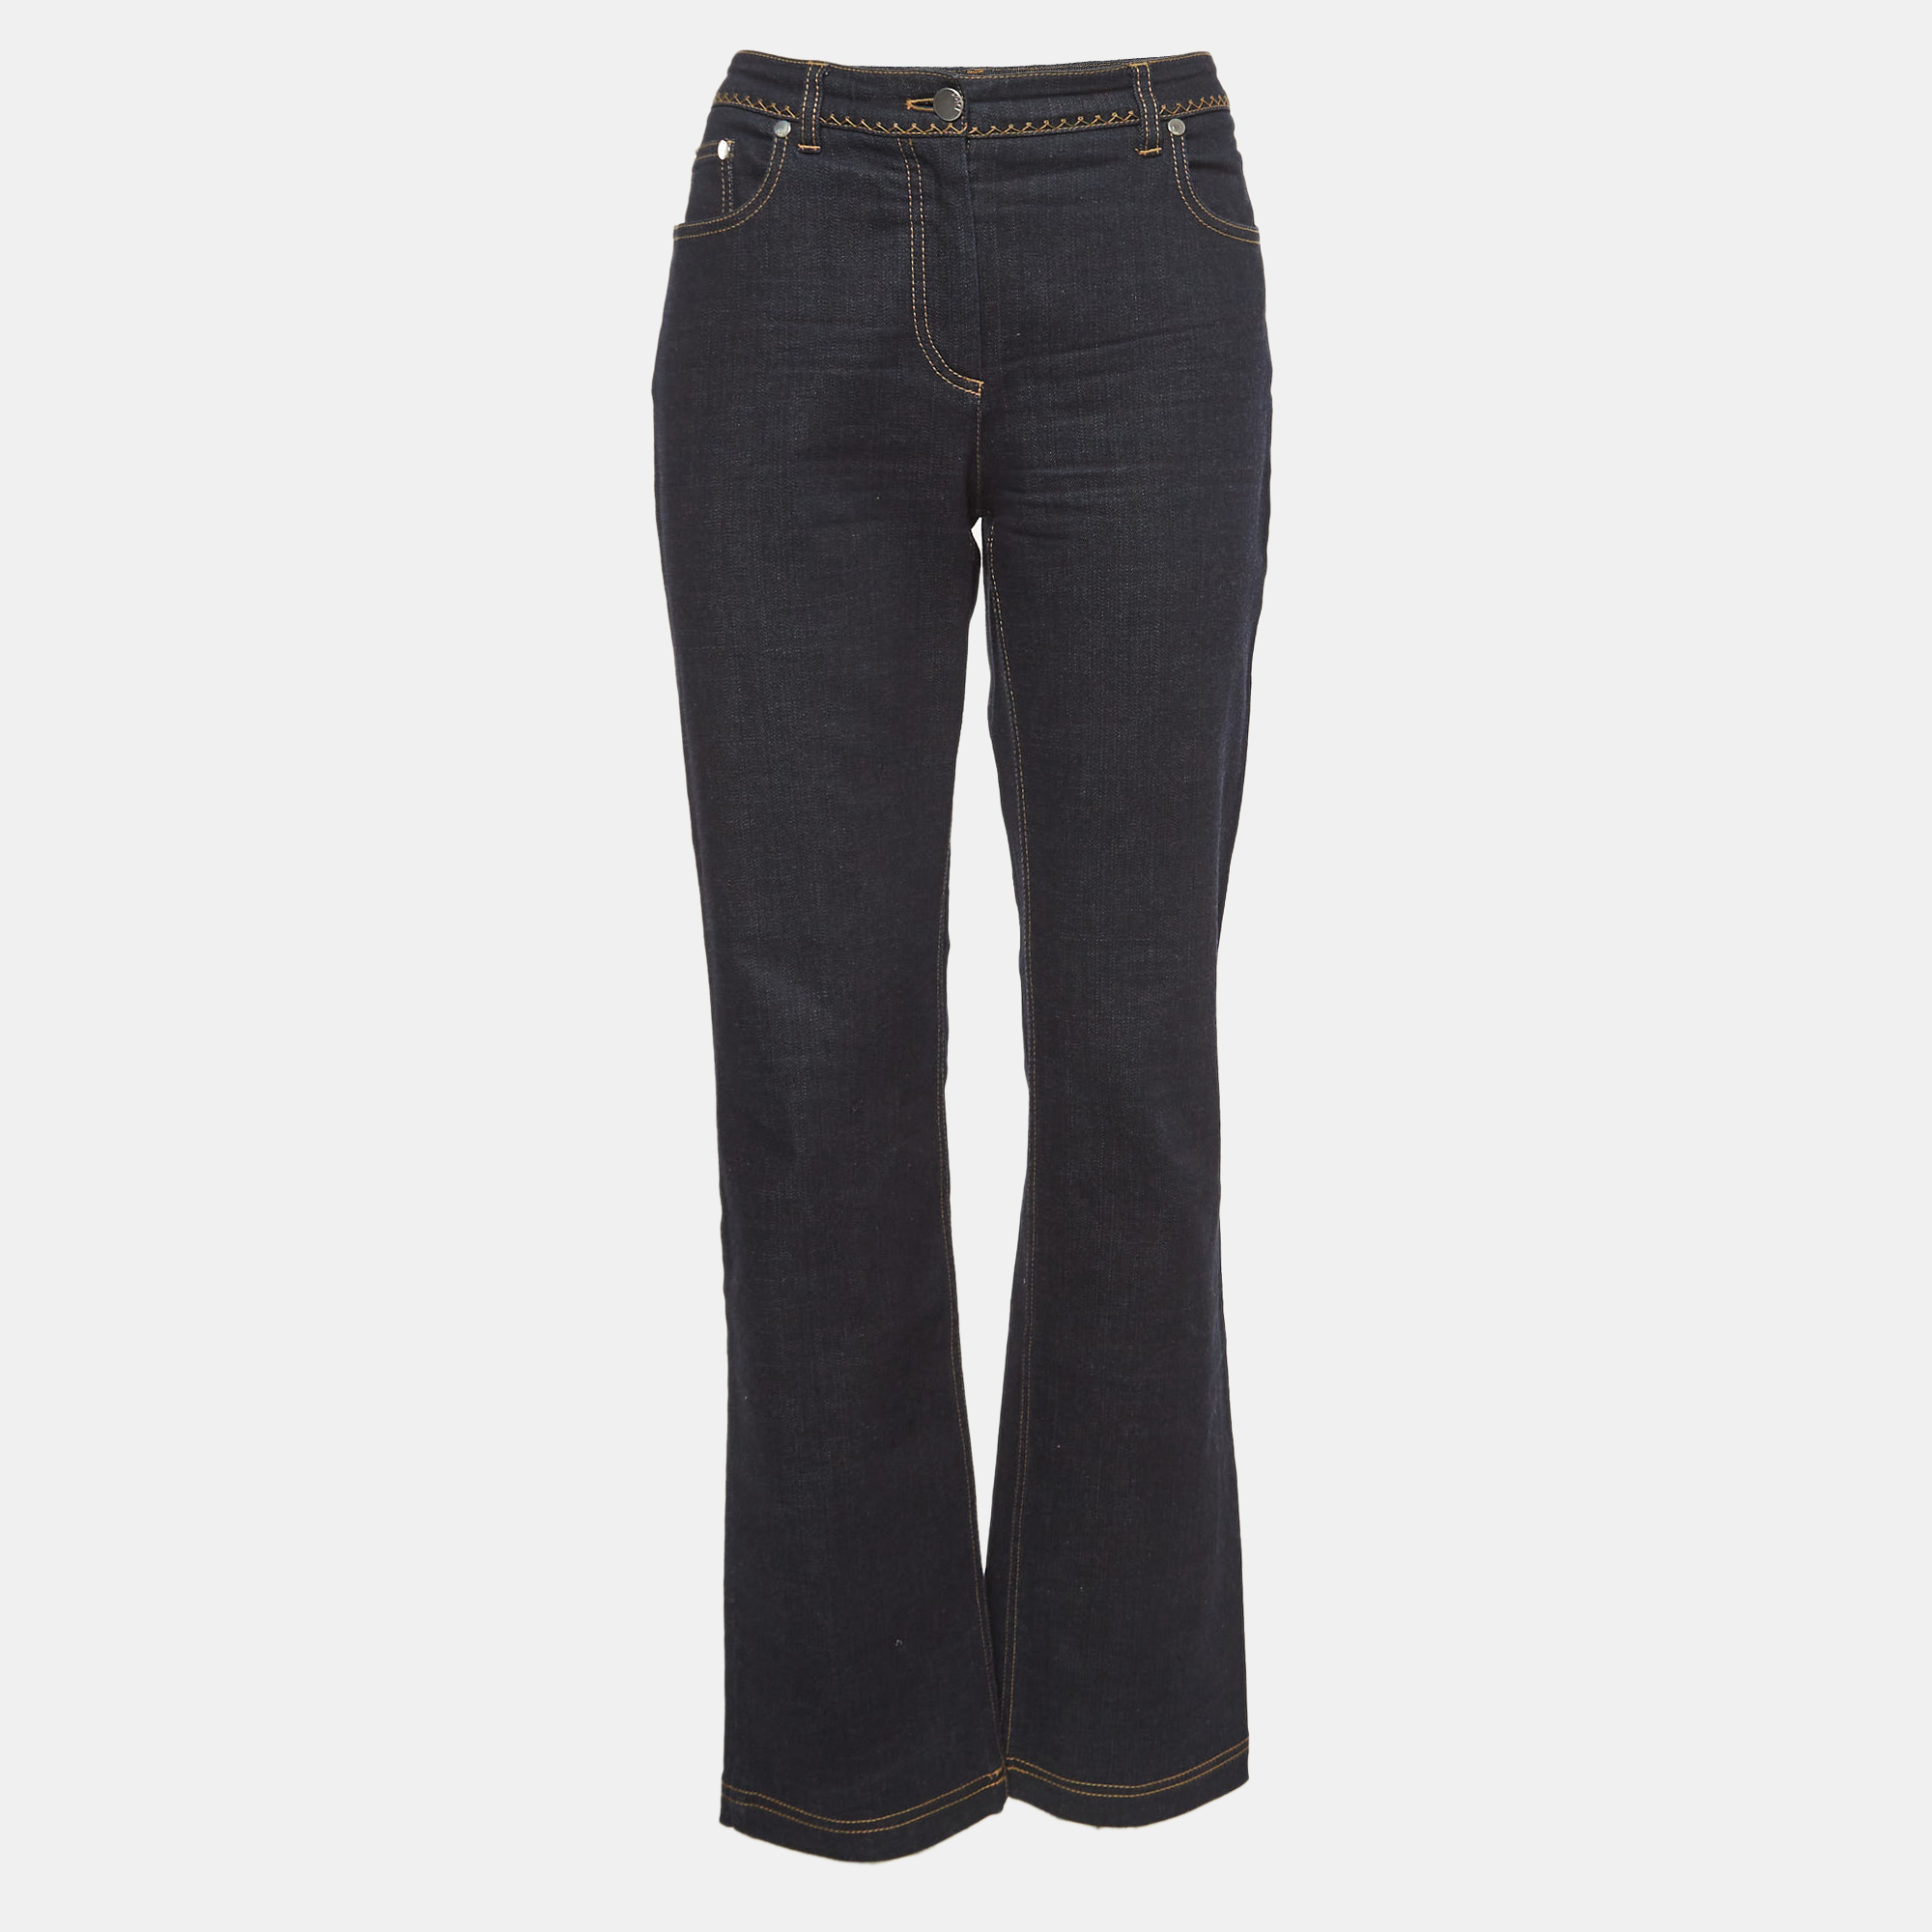 Dior Navy Blue Denim Straight Fit Jeans M Waist 30